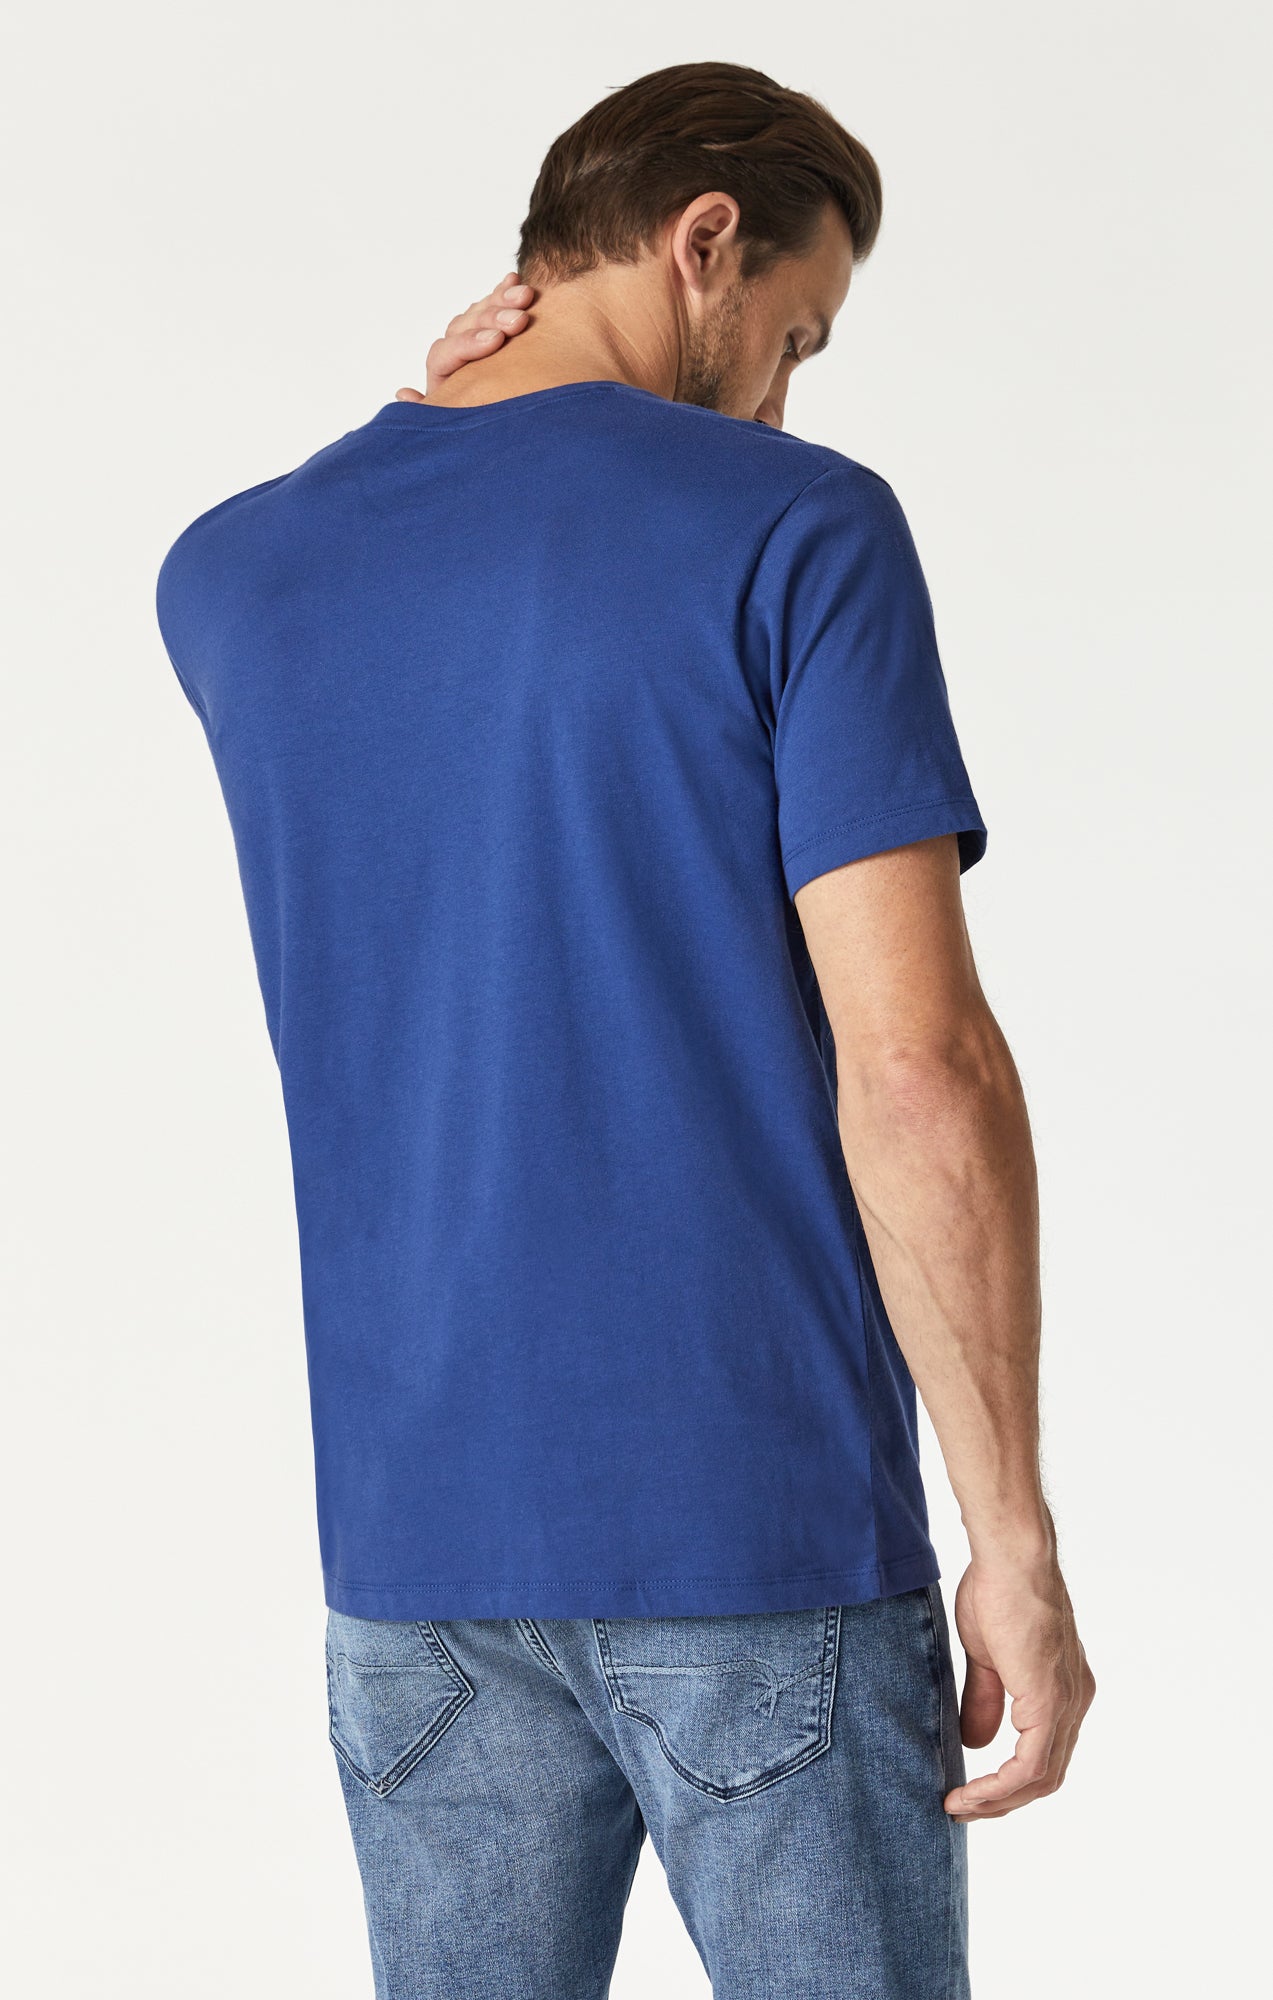 Mavi Men's One Pocket Shirt In Glacier Gray